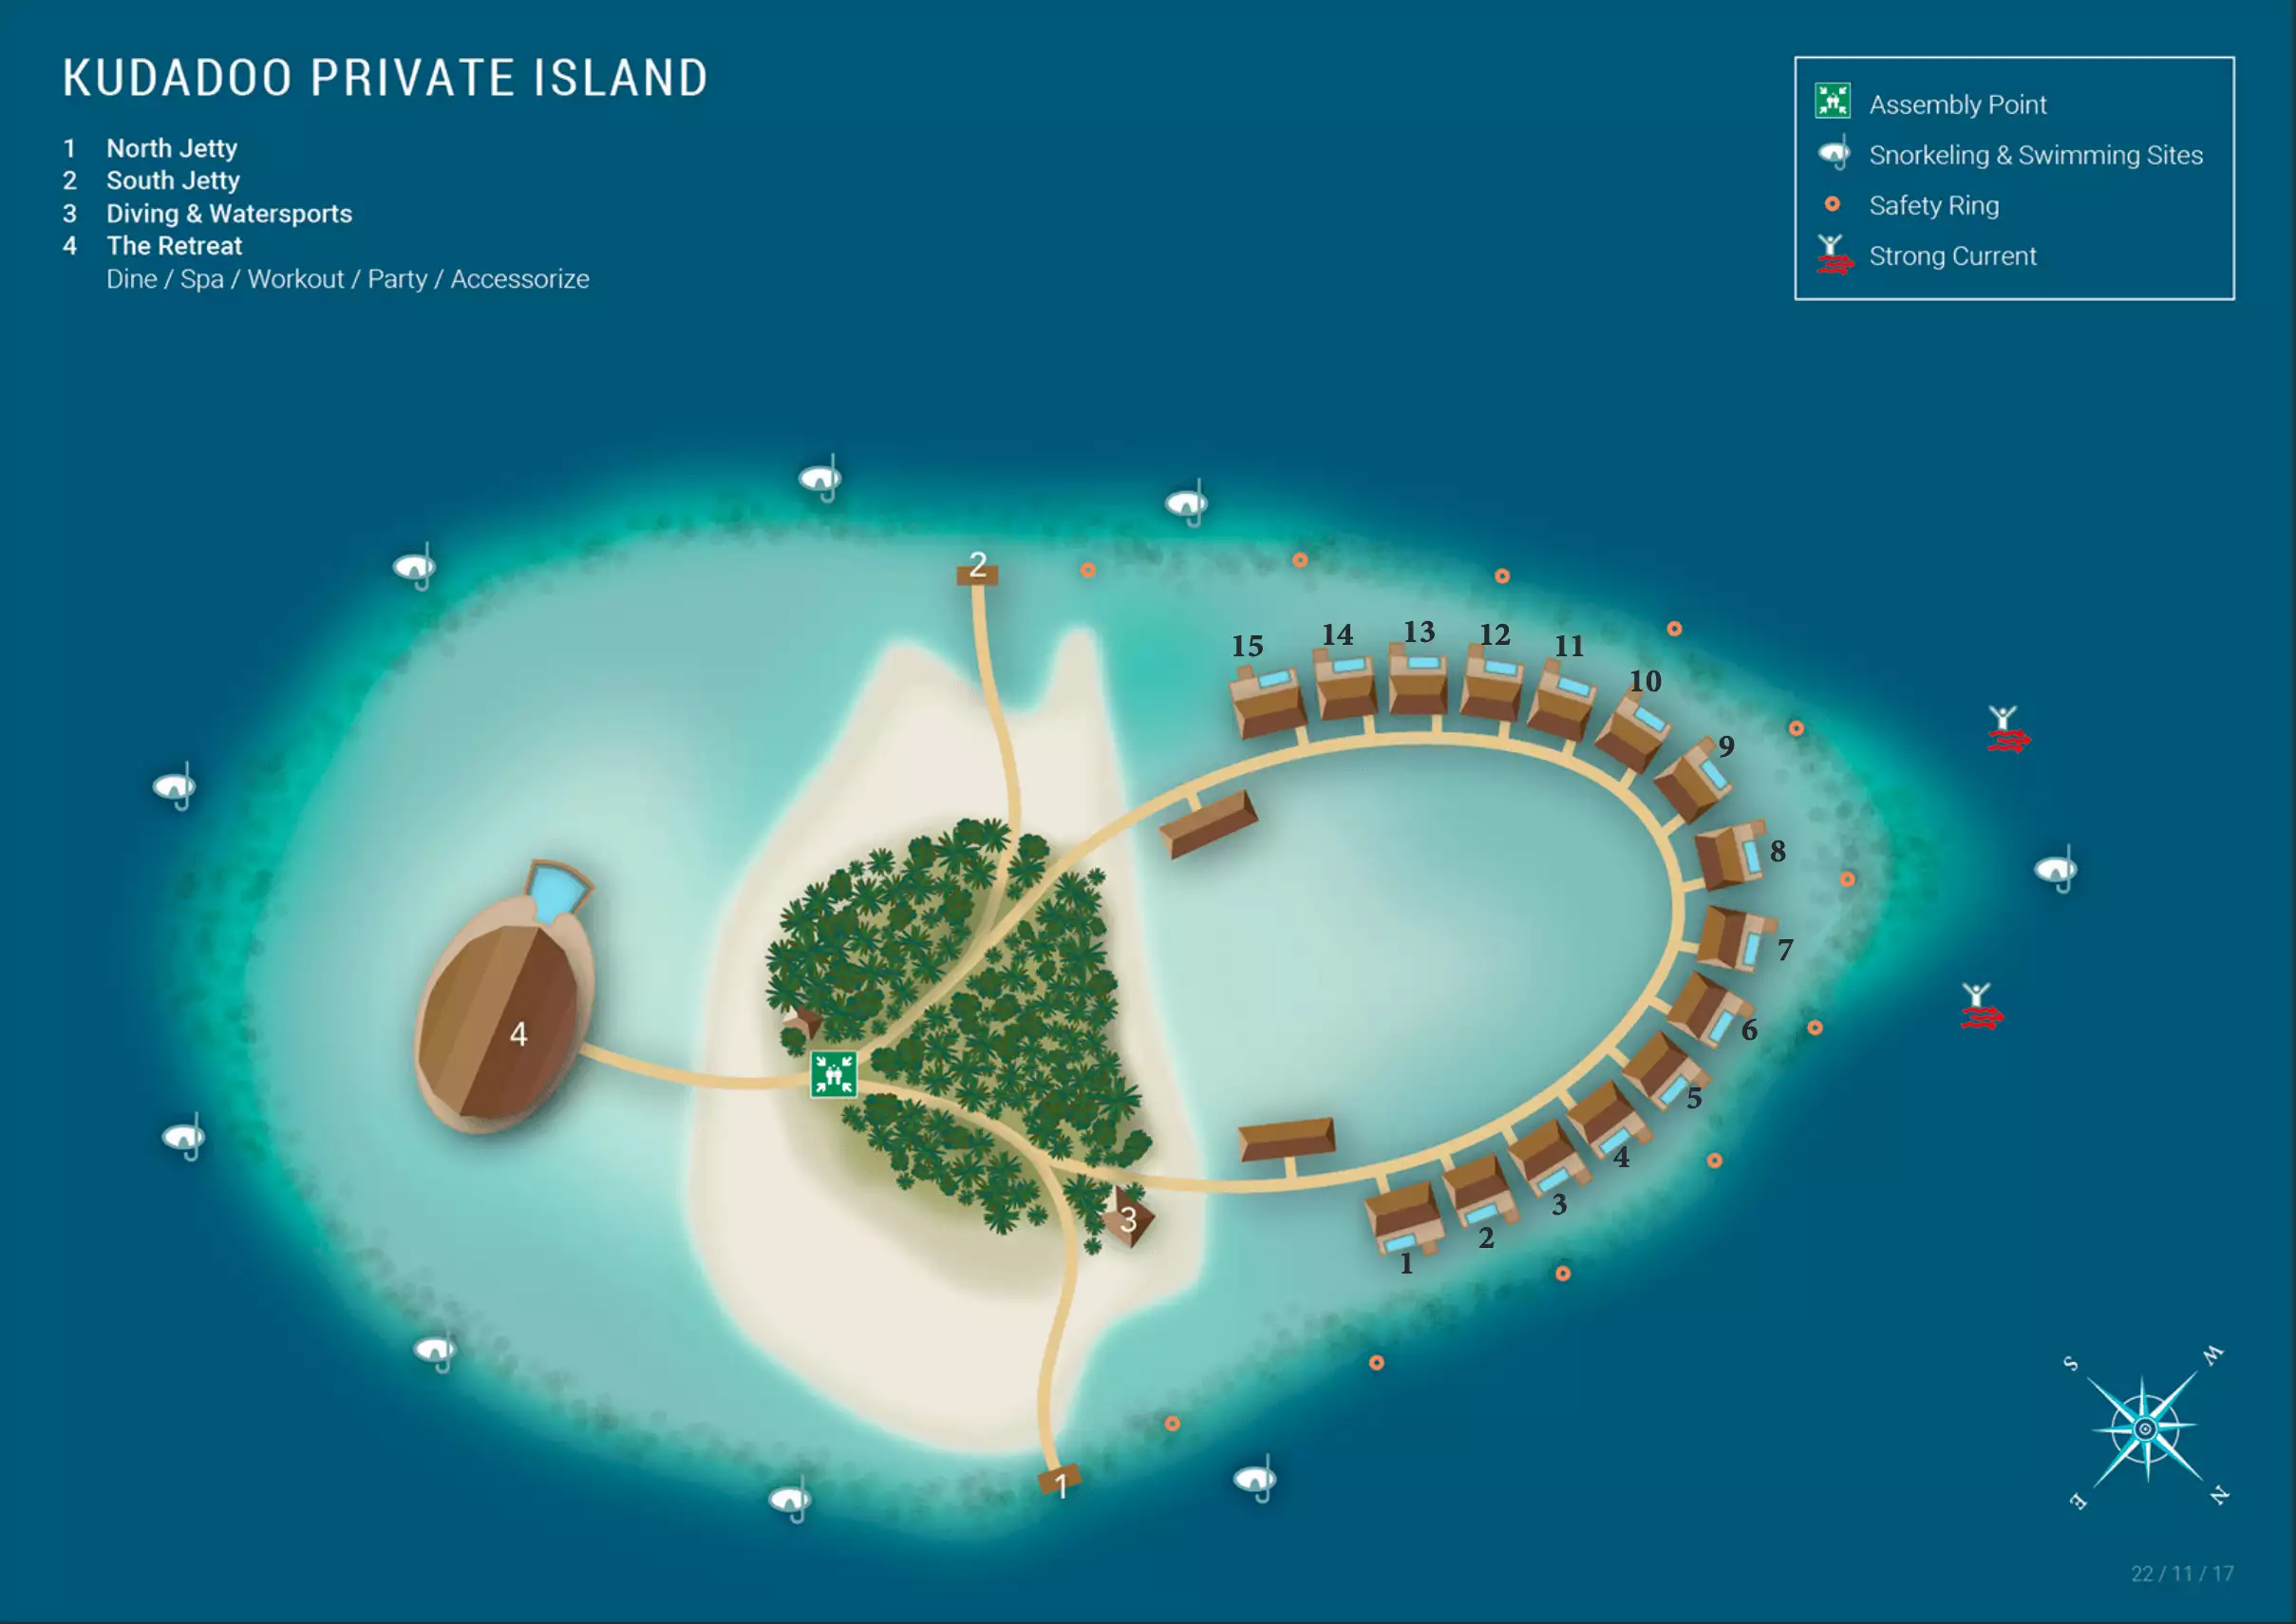 Kudadoo-Private-Island-1648362218.png